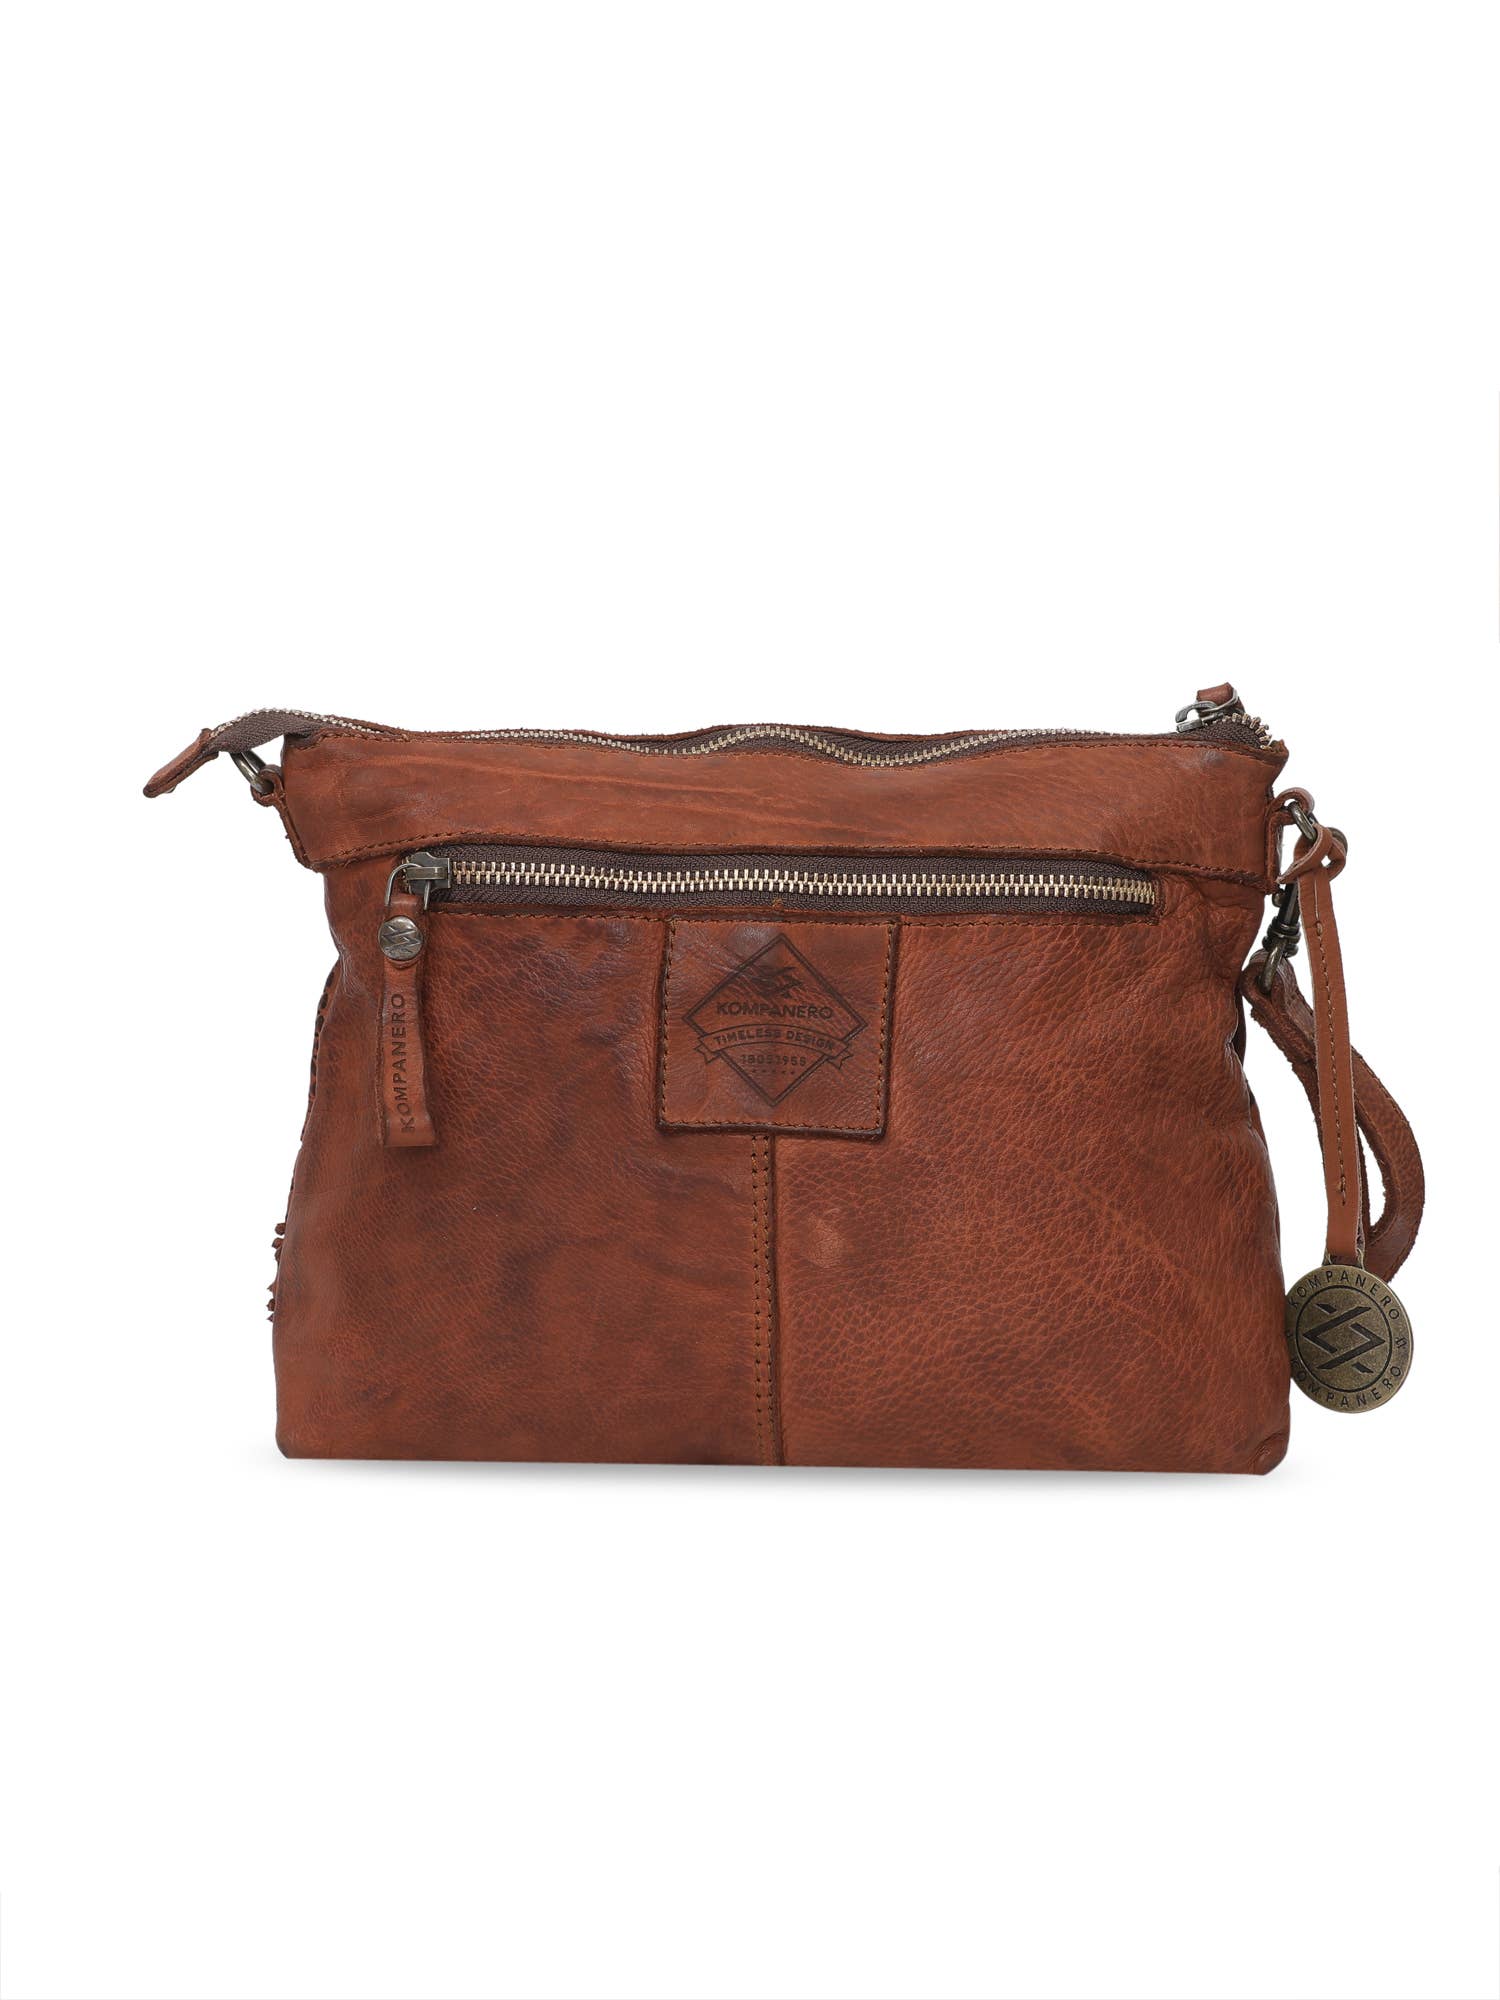 Genuine Leather Floral Design Handbag w/Sling - Kim - Cognac Back